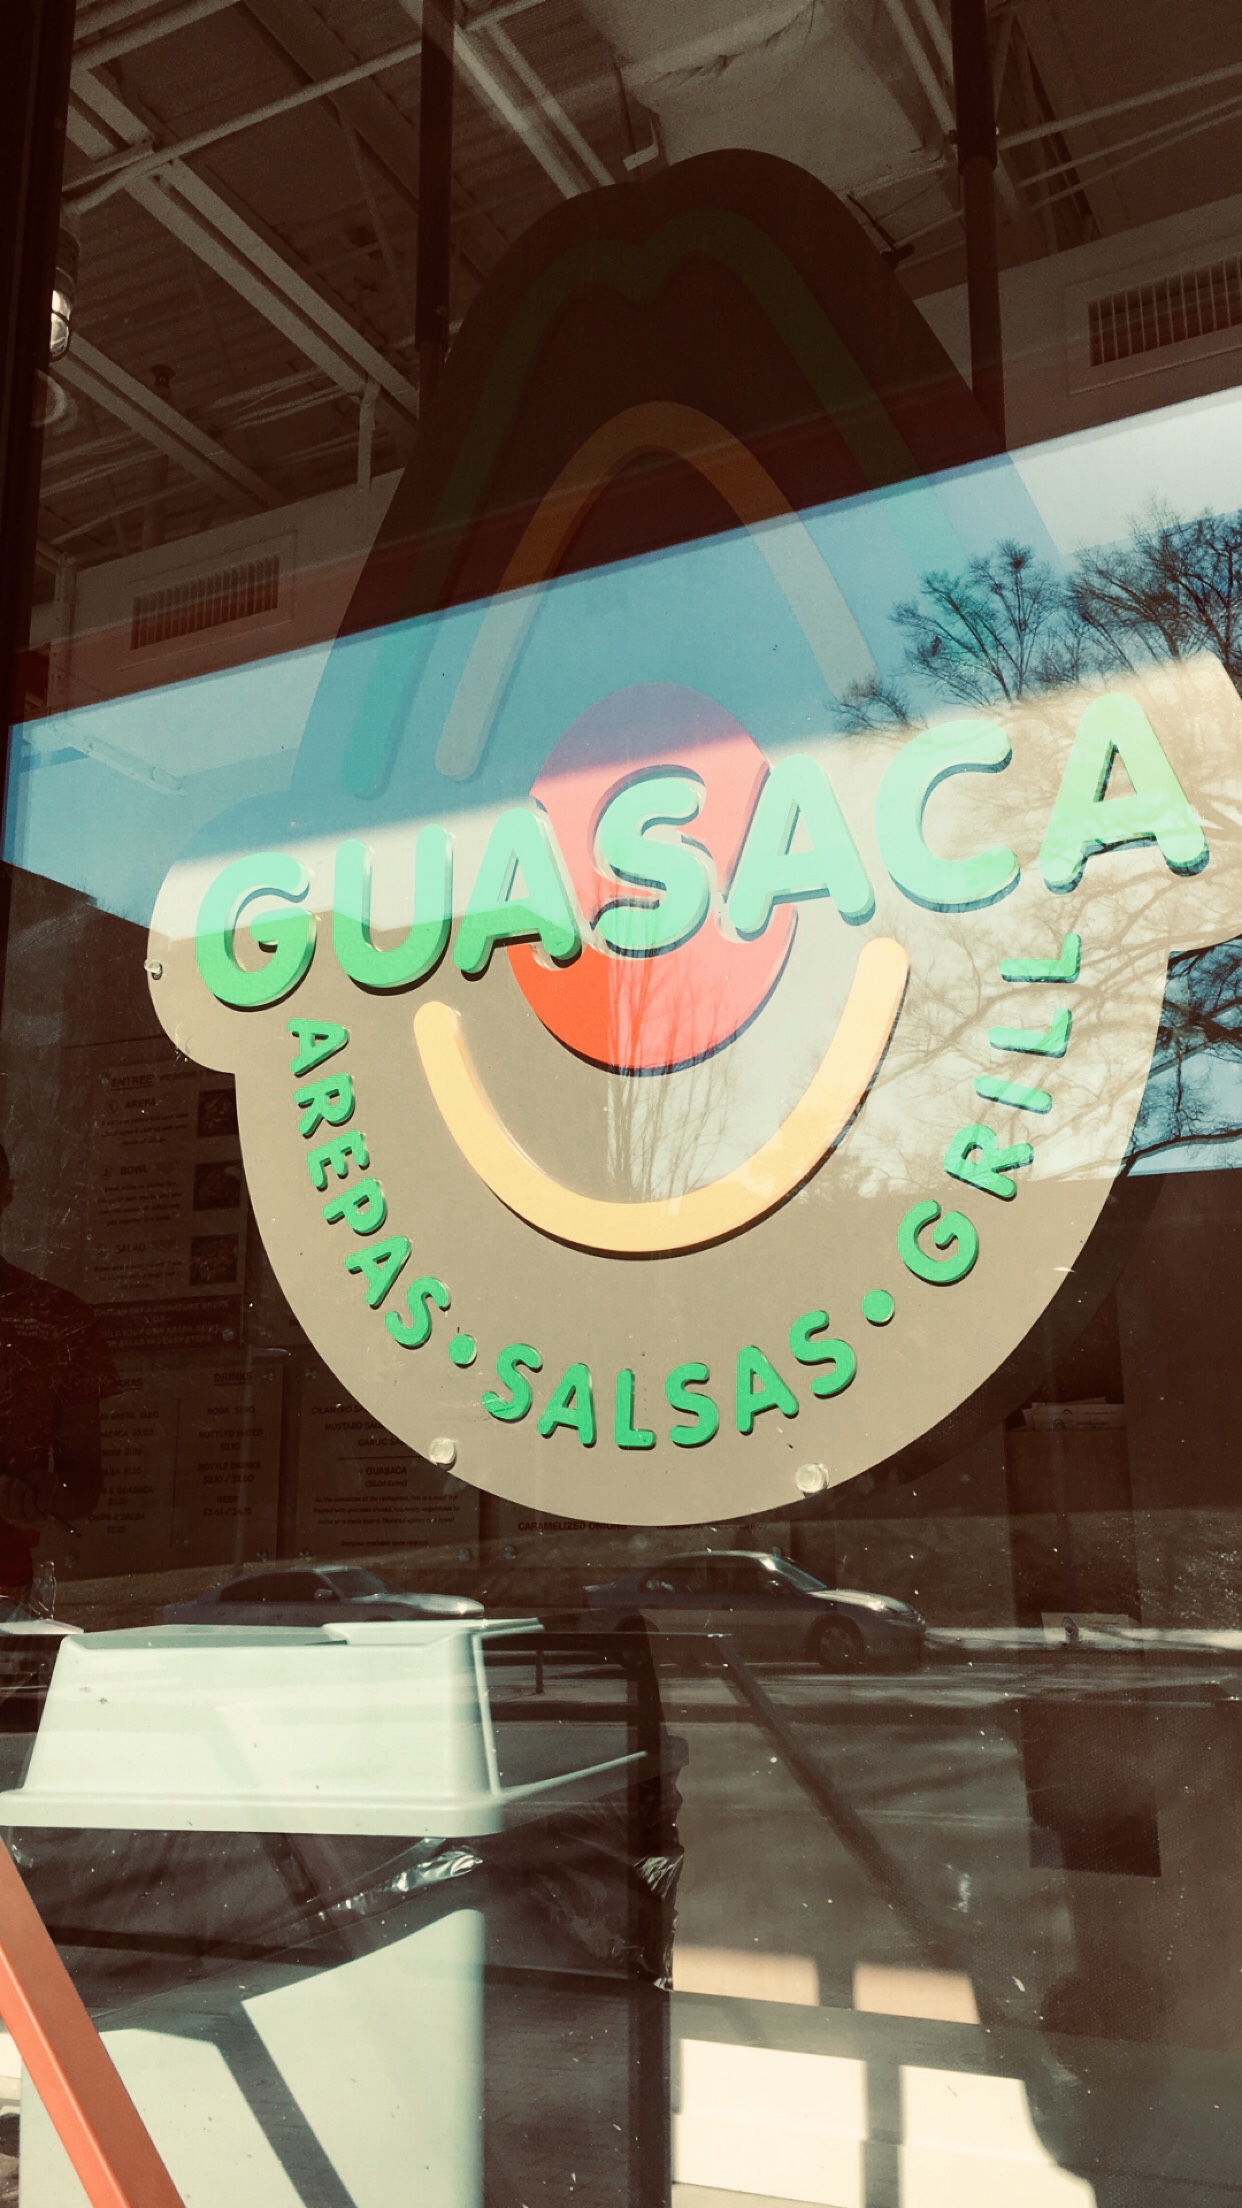 Guasaca